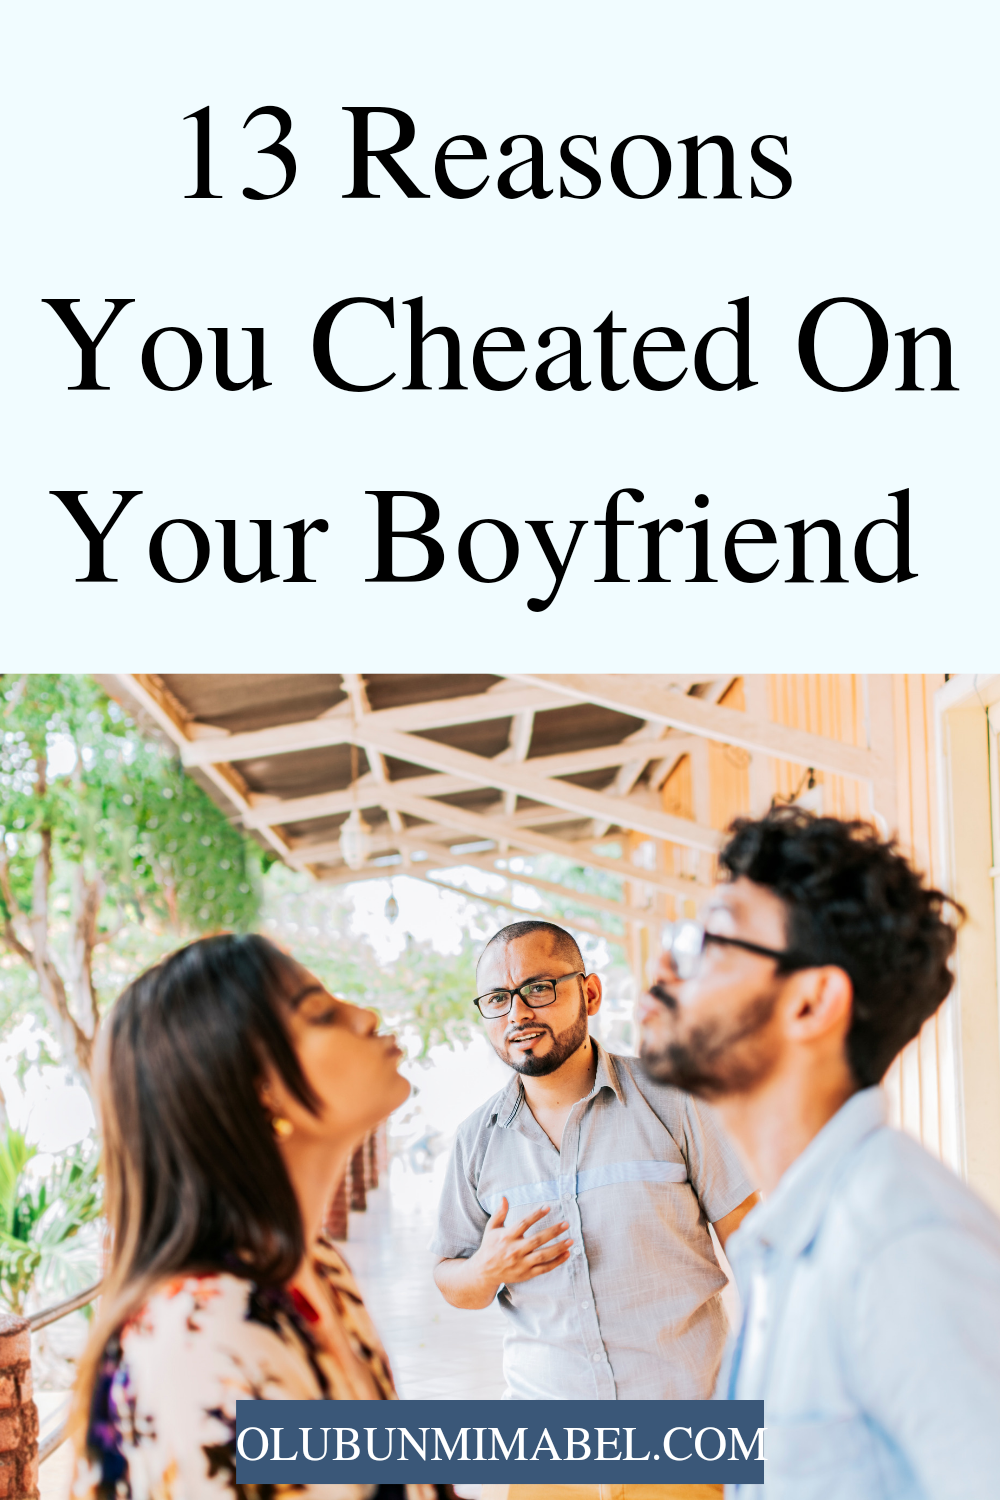 Why Did I Cheat On My Boyfriend